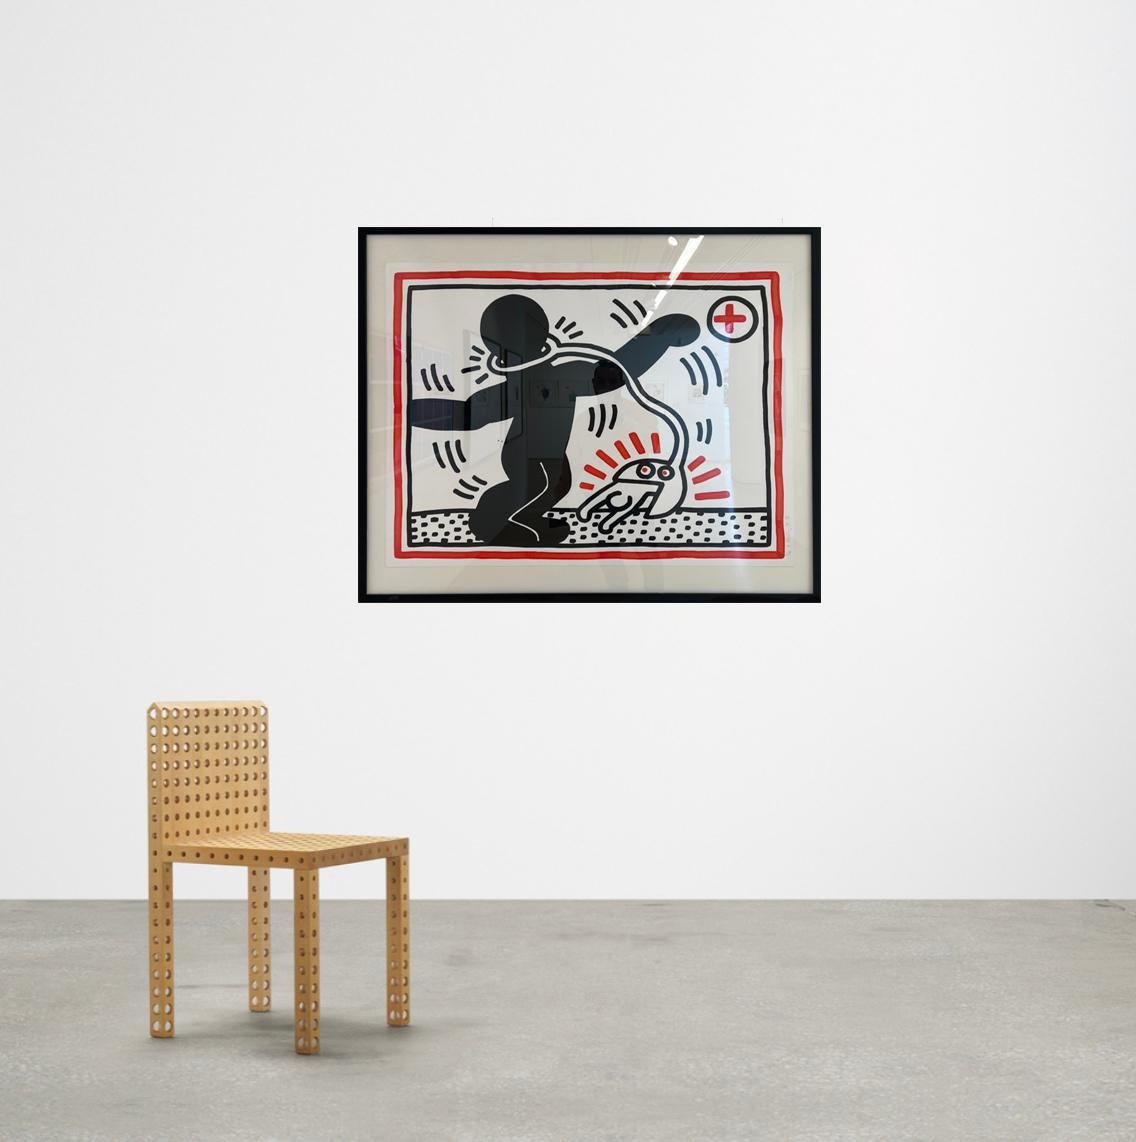 Artiste : Keith Haring 
Titre : Sans titre (Afrique du Sud libre) : une plaque
Taille :  39 7/8 x 39 1/2 in. (81 x 100.3 cm)
Support : Lithographie en couleurs, sur papier Rives BFK, avec marges complètes
Edition : 37 de 60
Année : 1985
Notes :